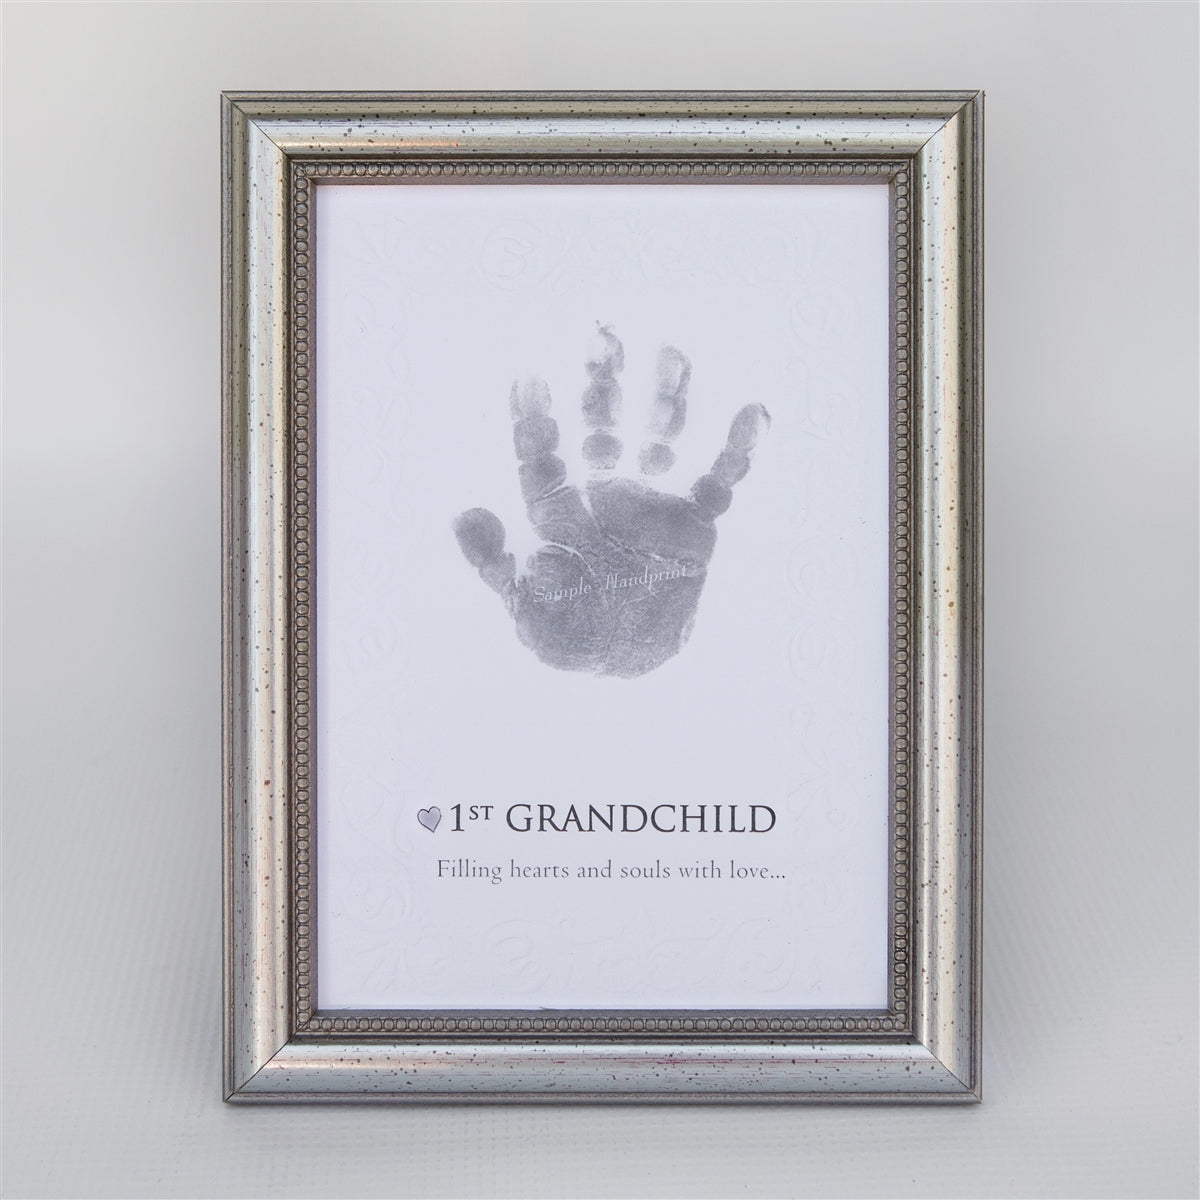 1st Grandchild handprint keepsake in elegant frame in silver with embossed beaded design.